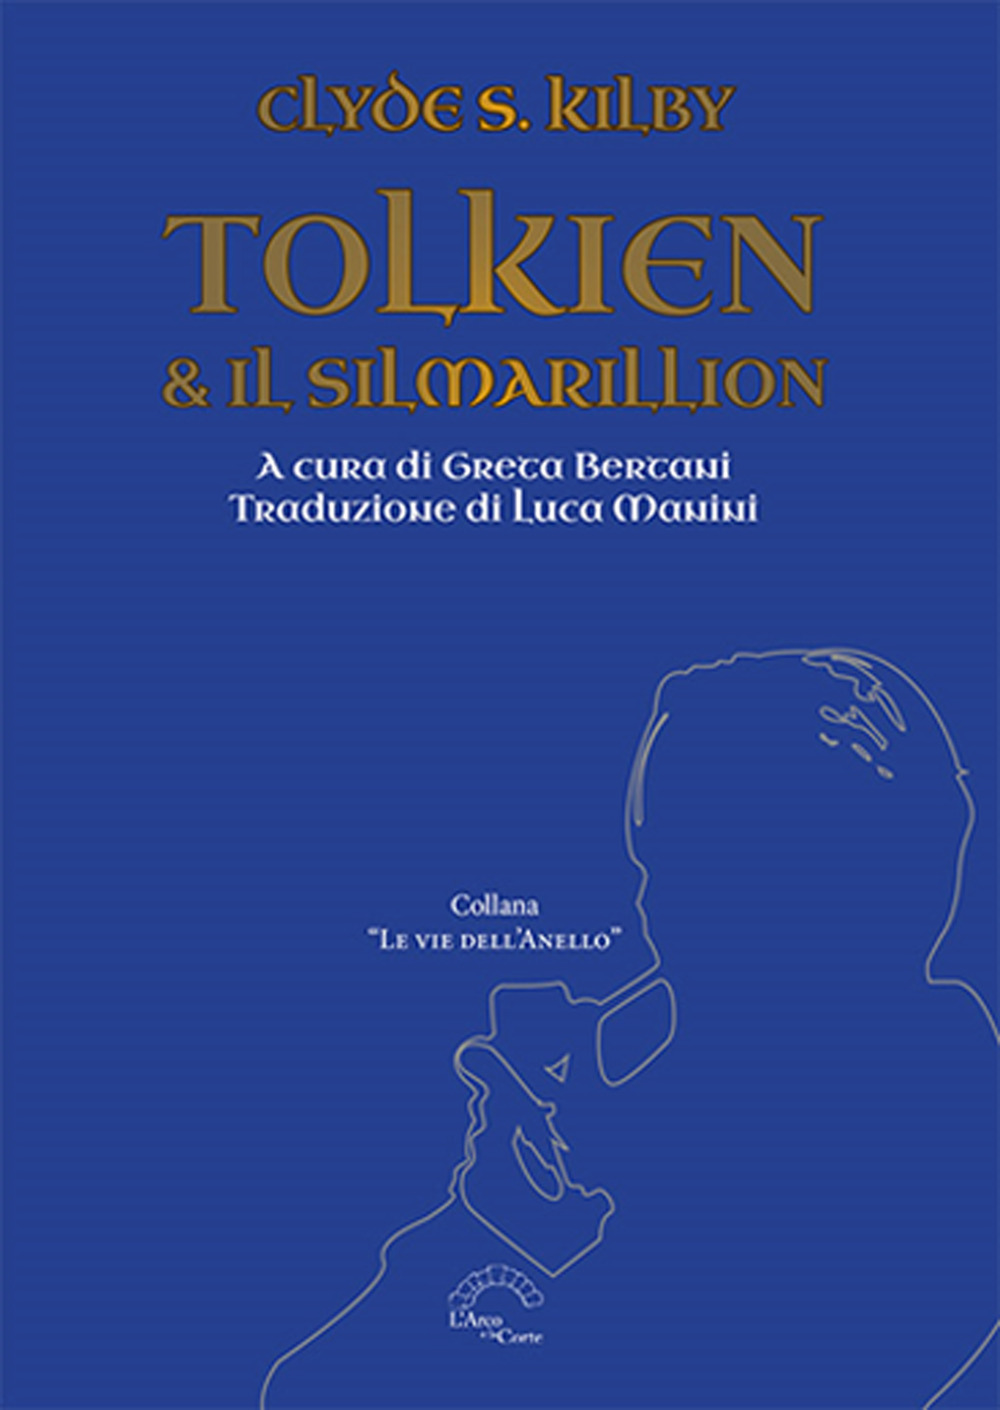 Libri Kilby Clyde S. - Tolkien & Il Silmarillion NUOVO SIGILLATO, EDIZIONE DEL 01/01/2023 SUBITO DISPONIBILE